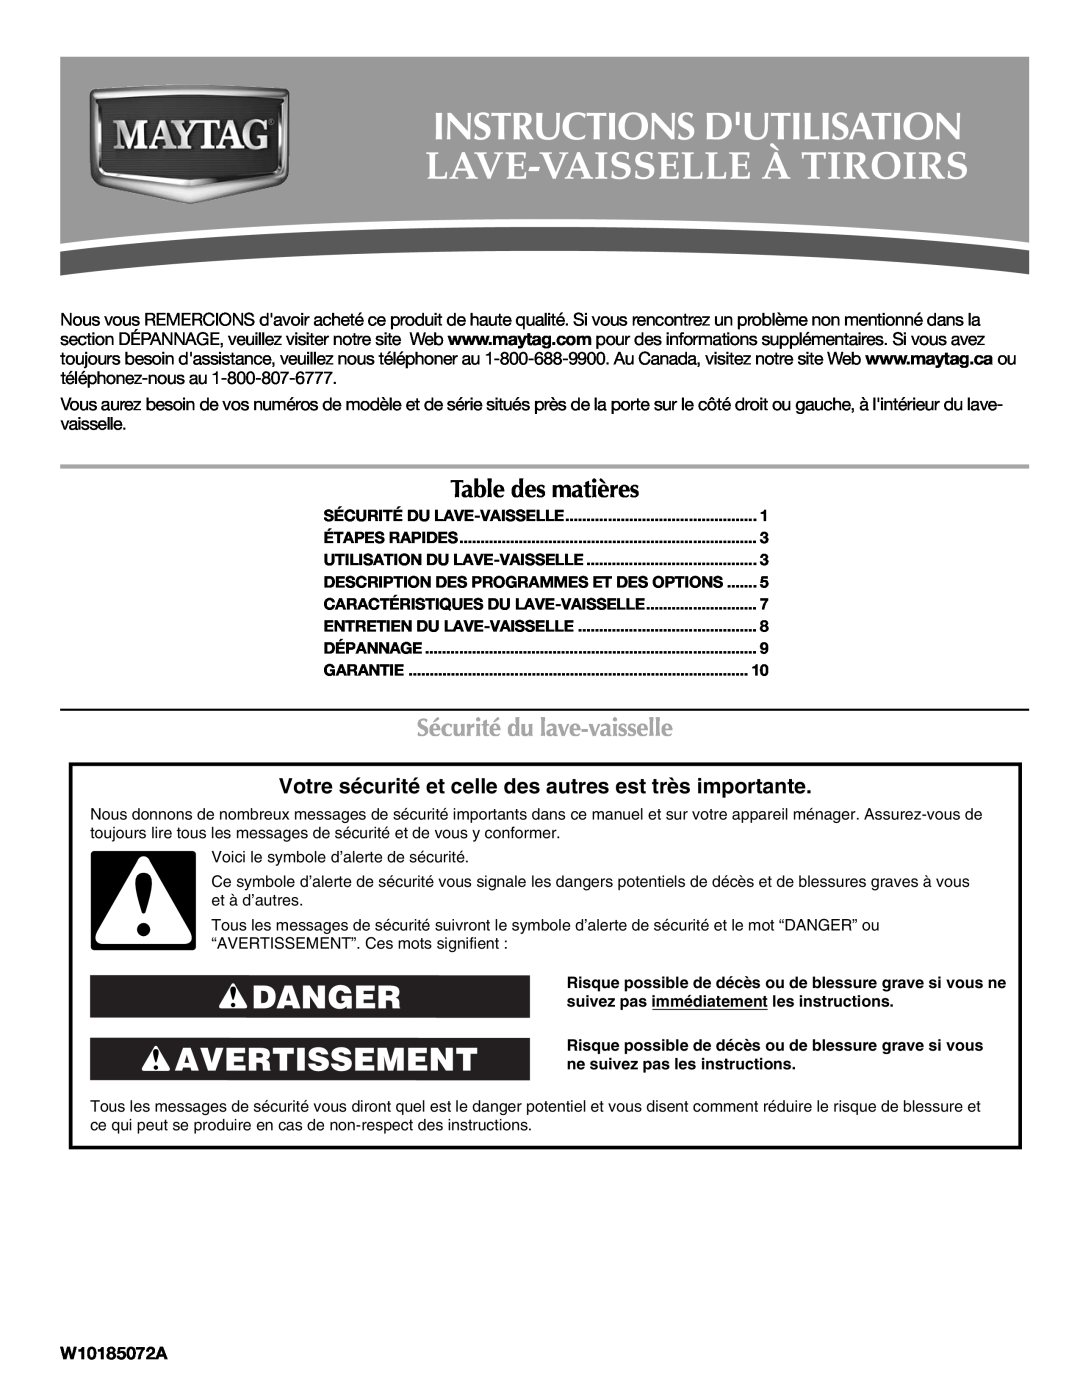 Maytag W10185072A warranty Instructions Dutilisation, Danger Avertissement, Table des matières, Sécurité du lave-vaisselle 